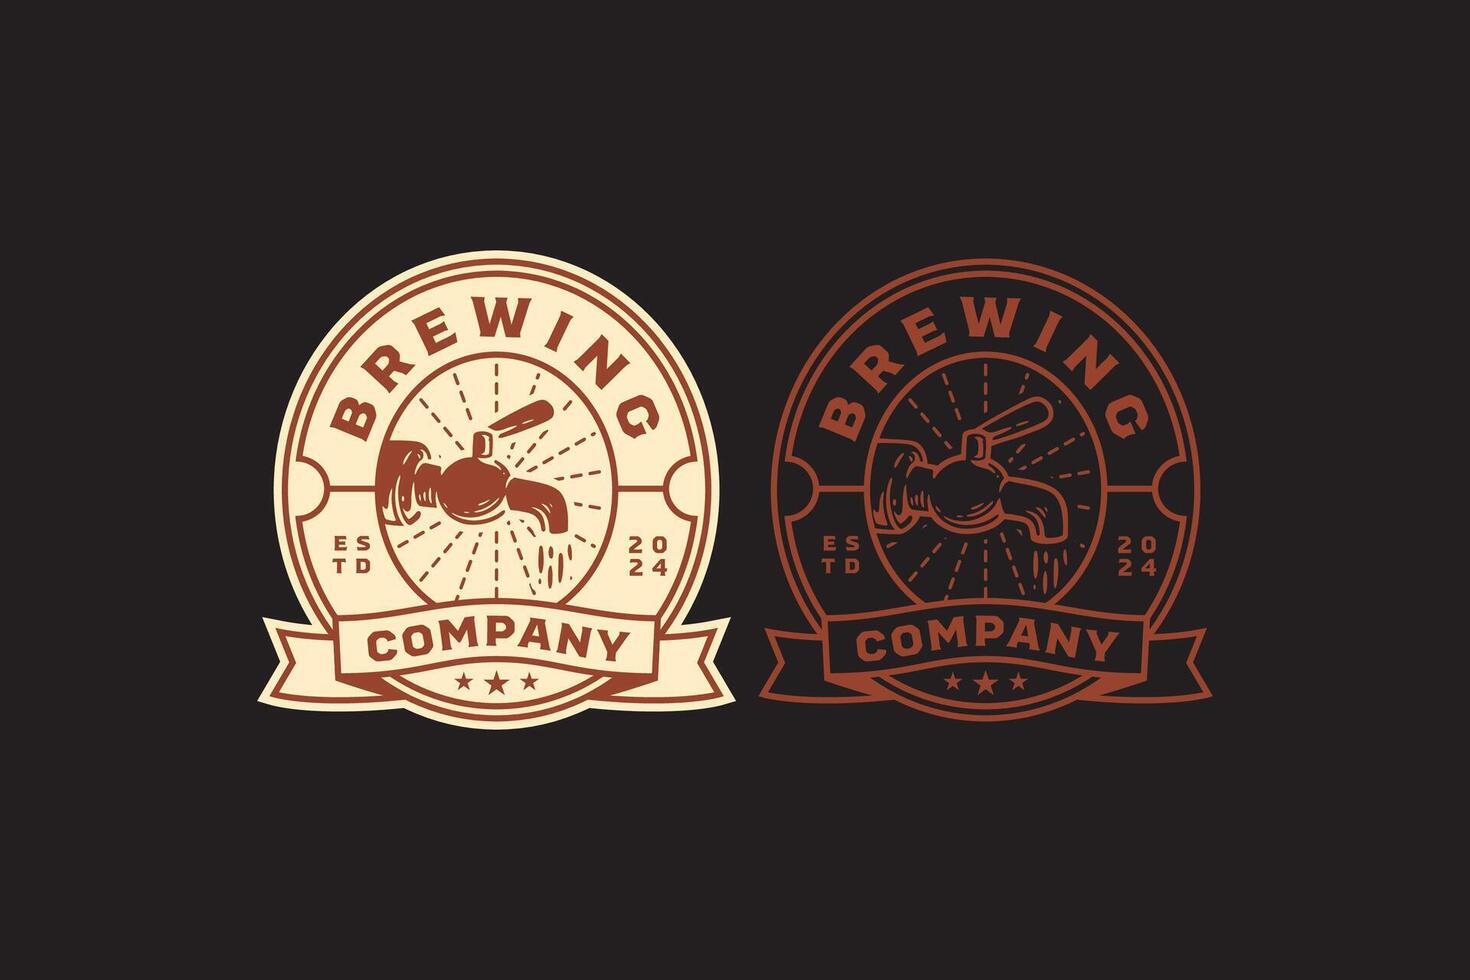 bier kraan klassiek logo ontwerp voor bar en brouwen bedrijf label, teken, symbool of merk identiteit vector